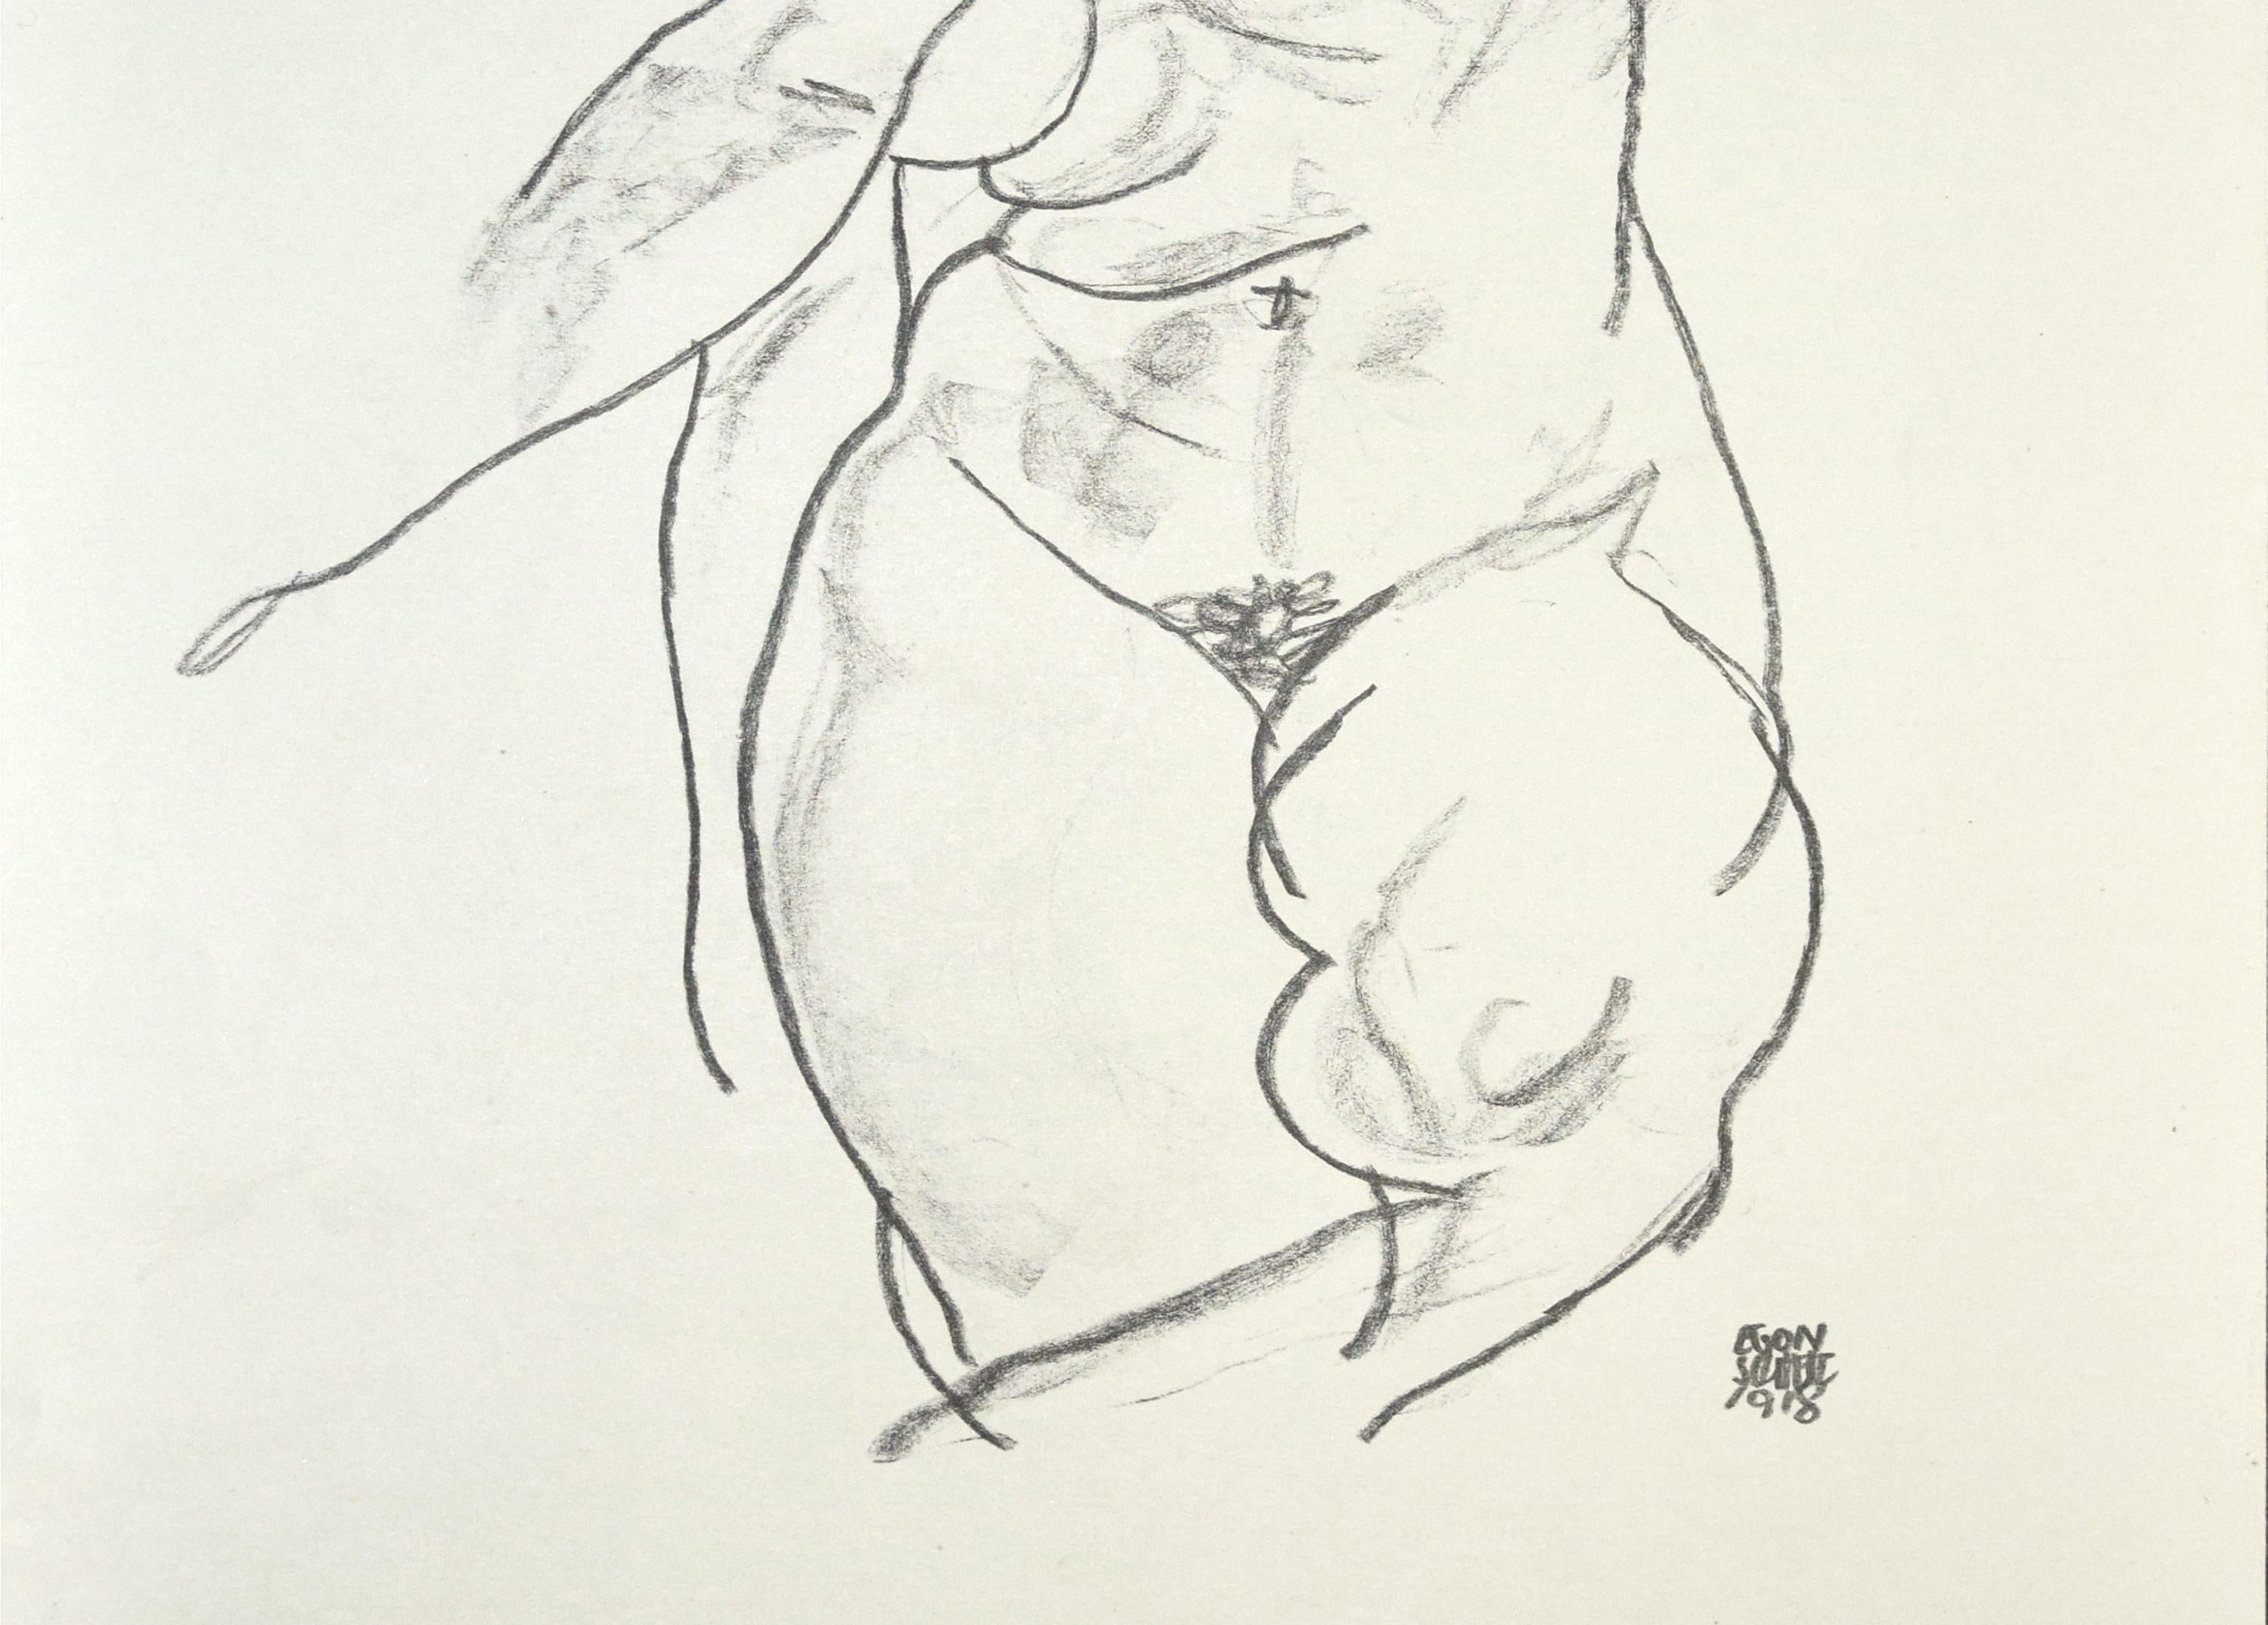 Femme nue -  Impression Collotype d'après Egon Schiele- 1920 - Print de (after) Egon Schiele